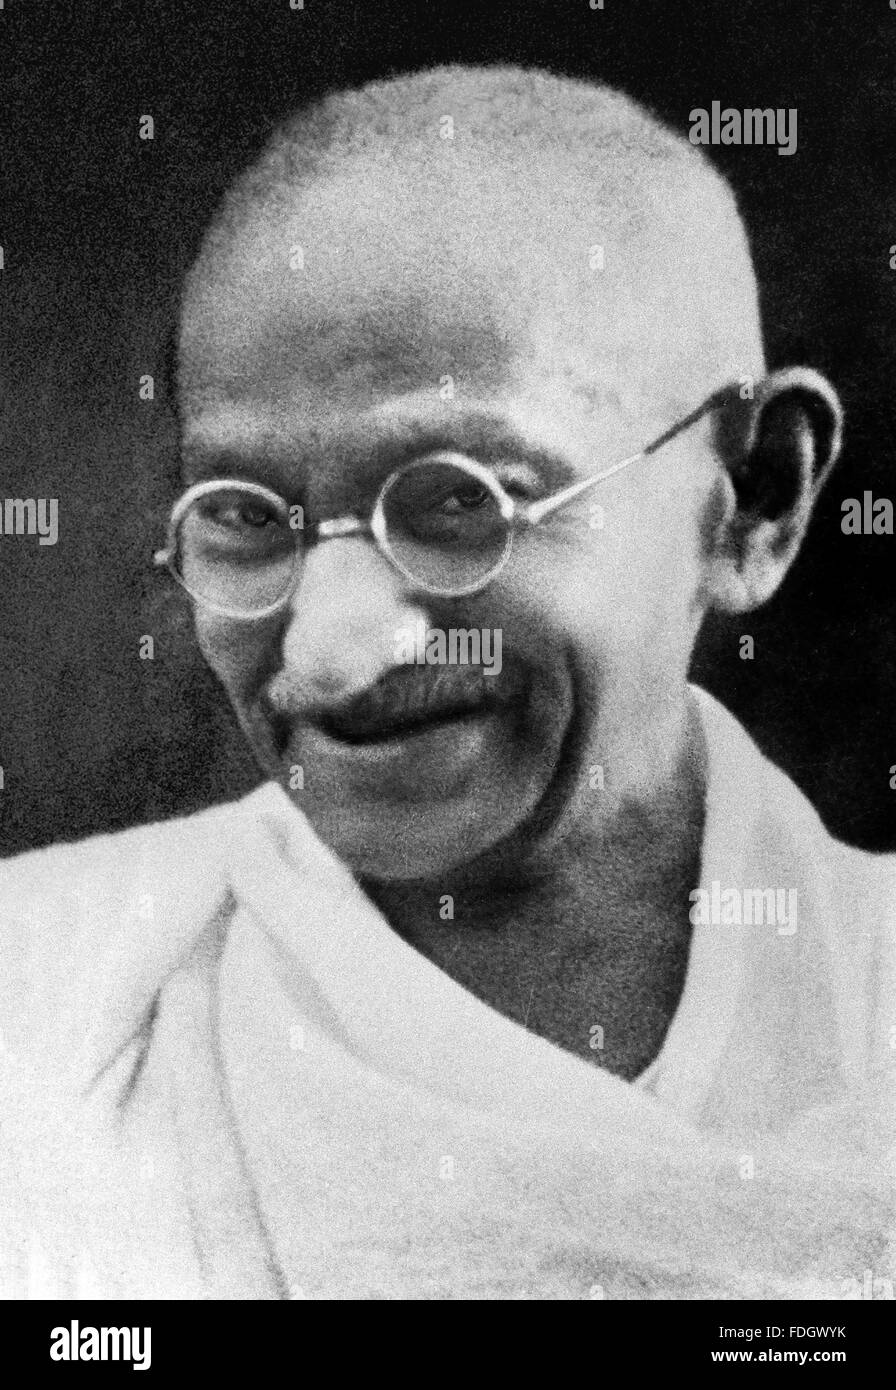 Mahatma Gandhi. Porträt von Mohandas Karamchand Gandhi (1869-1948), weithin bekannt als Mahatma Gandhi. Foto wahrscheinlich in den späten 1930er Jahren aufgenommen Stockfoto